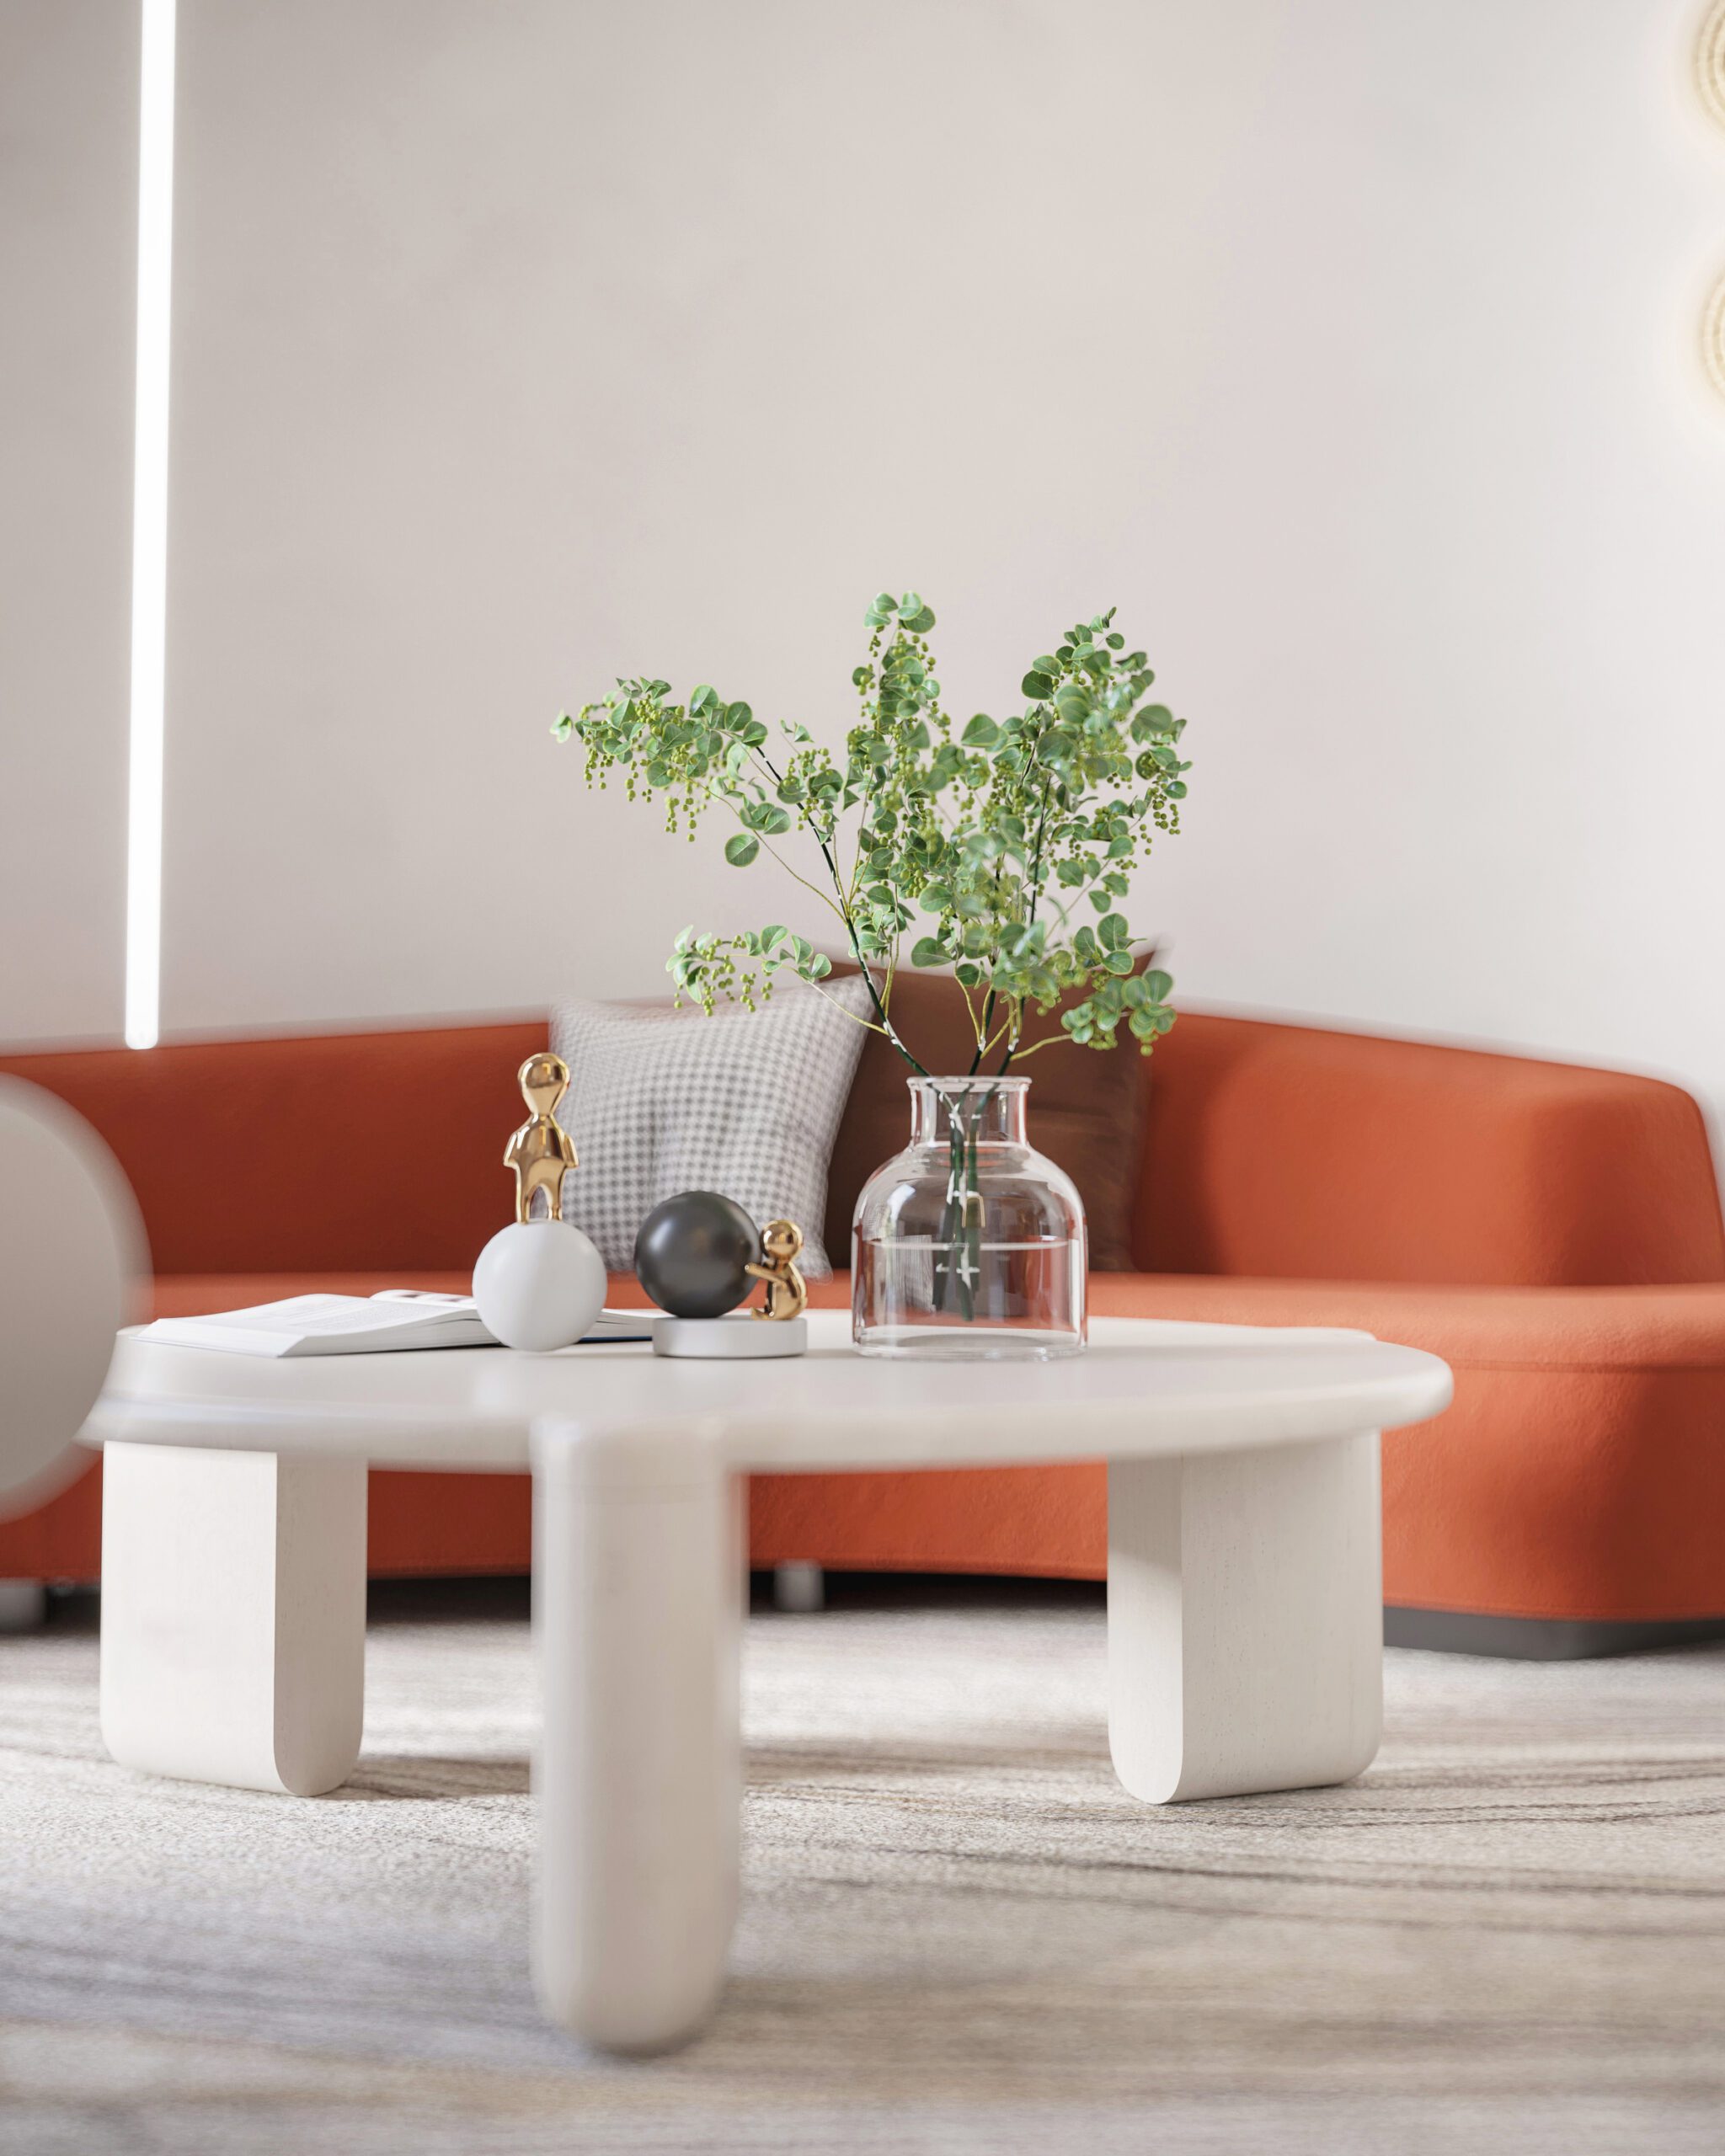 北歐風格主體以莫蘭迪色係等經典色為主，可以在小型家具上採用明亮的橙色系，提亮空間的整體色調